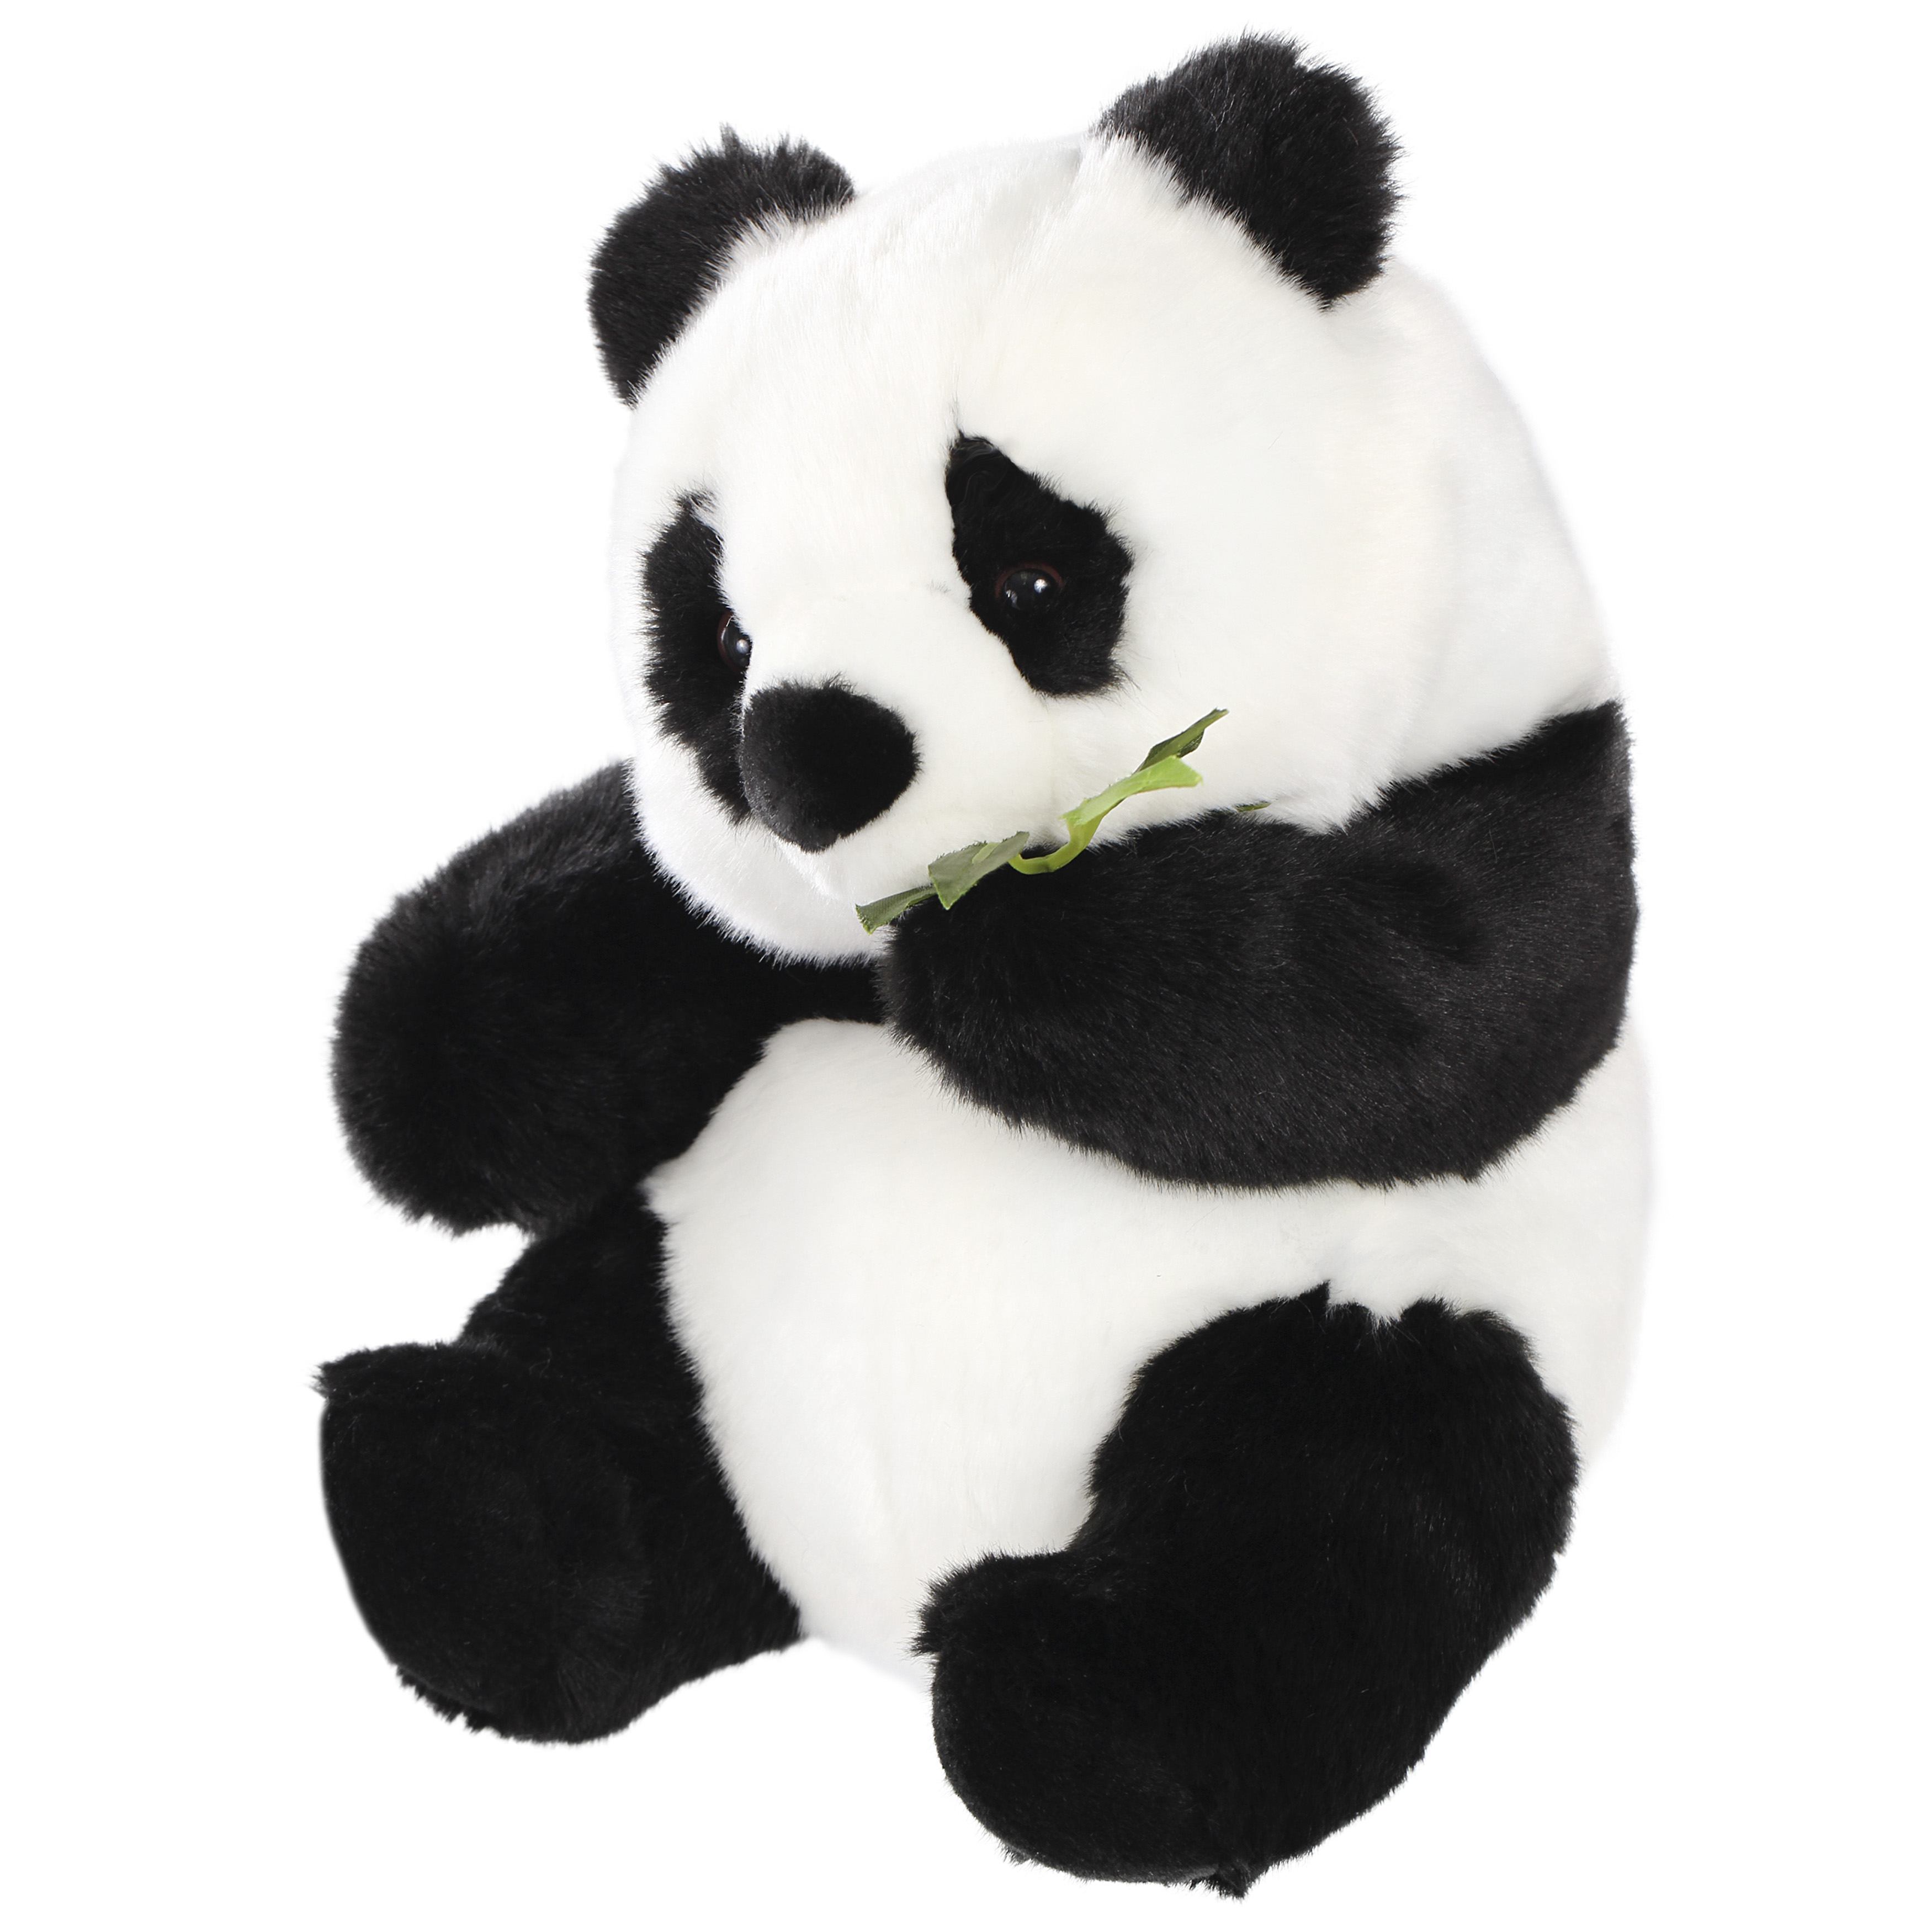 Реалистичная мягкая игрушка Hansa Creation Панда большая, 27 см кружка 450 мл большая панда maxwell